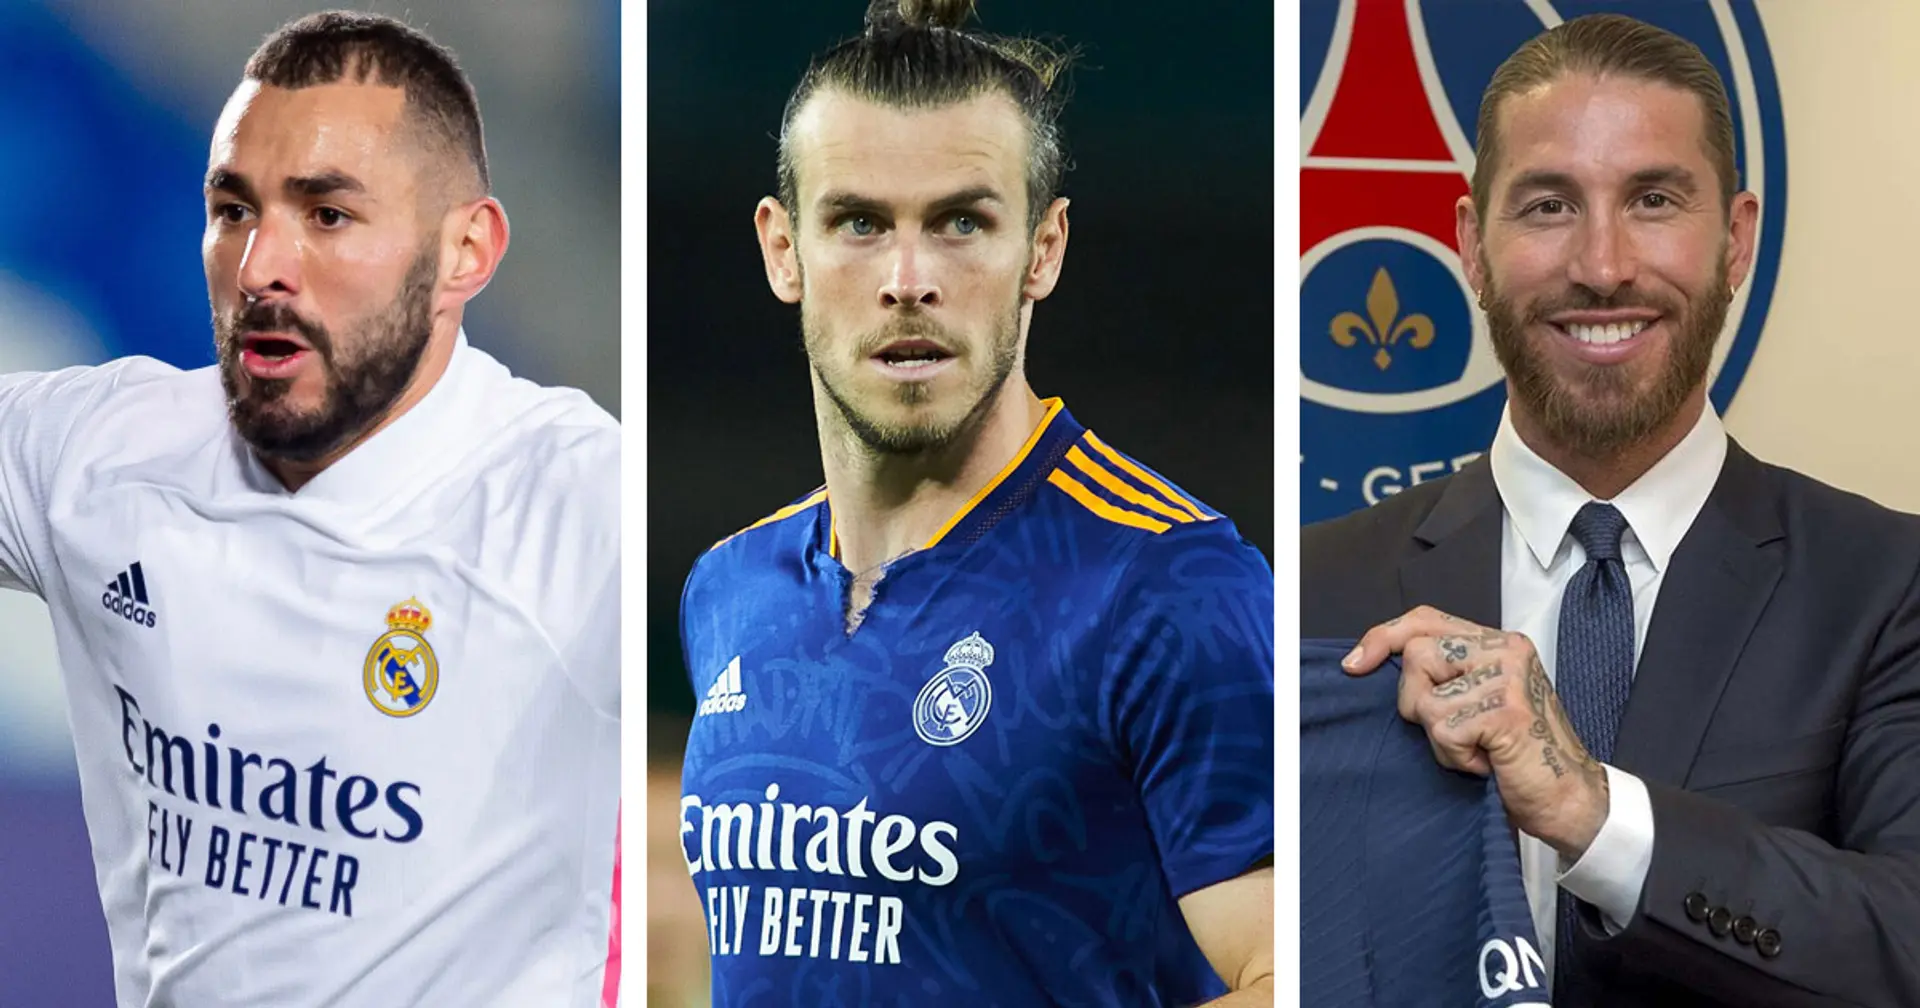 L'agent de Bale révèle le plus grand objectif en carrière du joueur et 2 autres actus que vous avez peut-être manquées